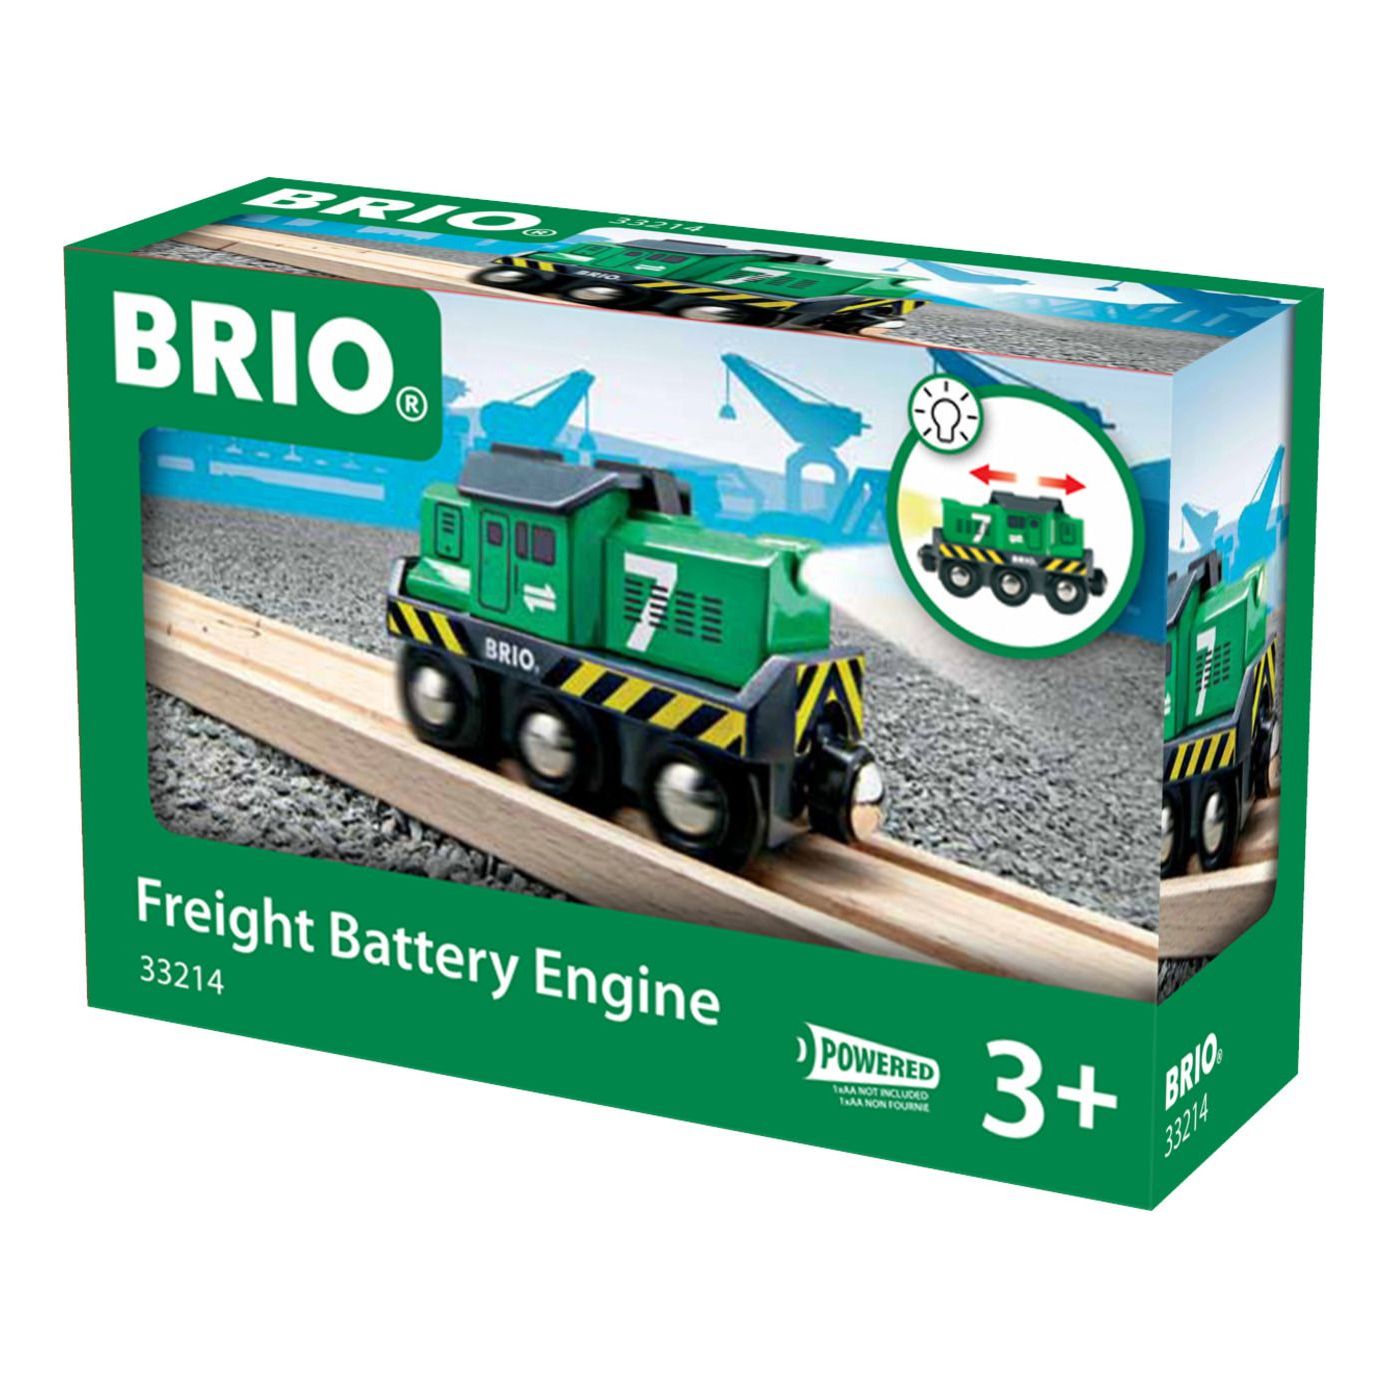 Brio Freight Battery Engine BRIO